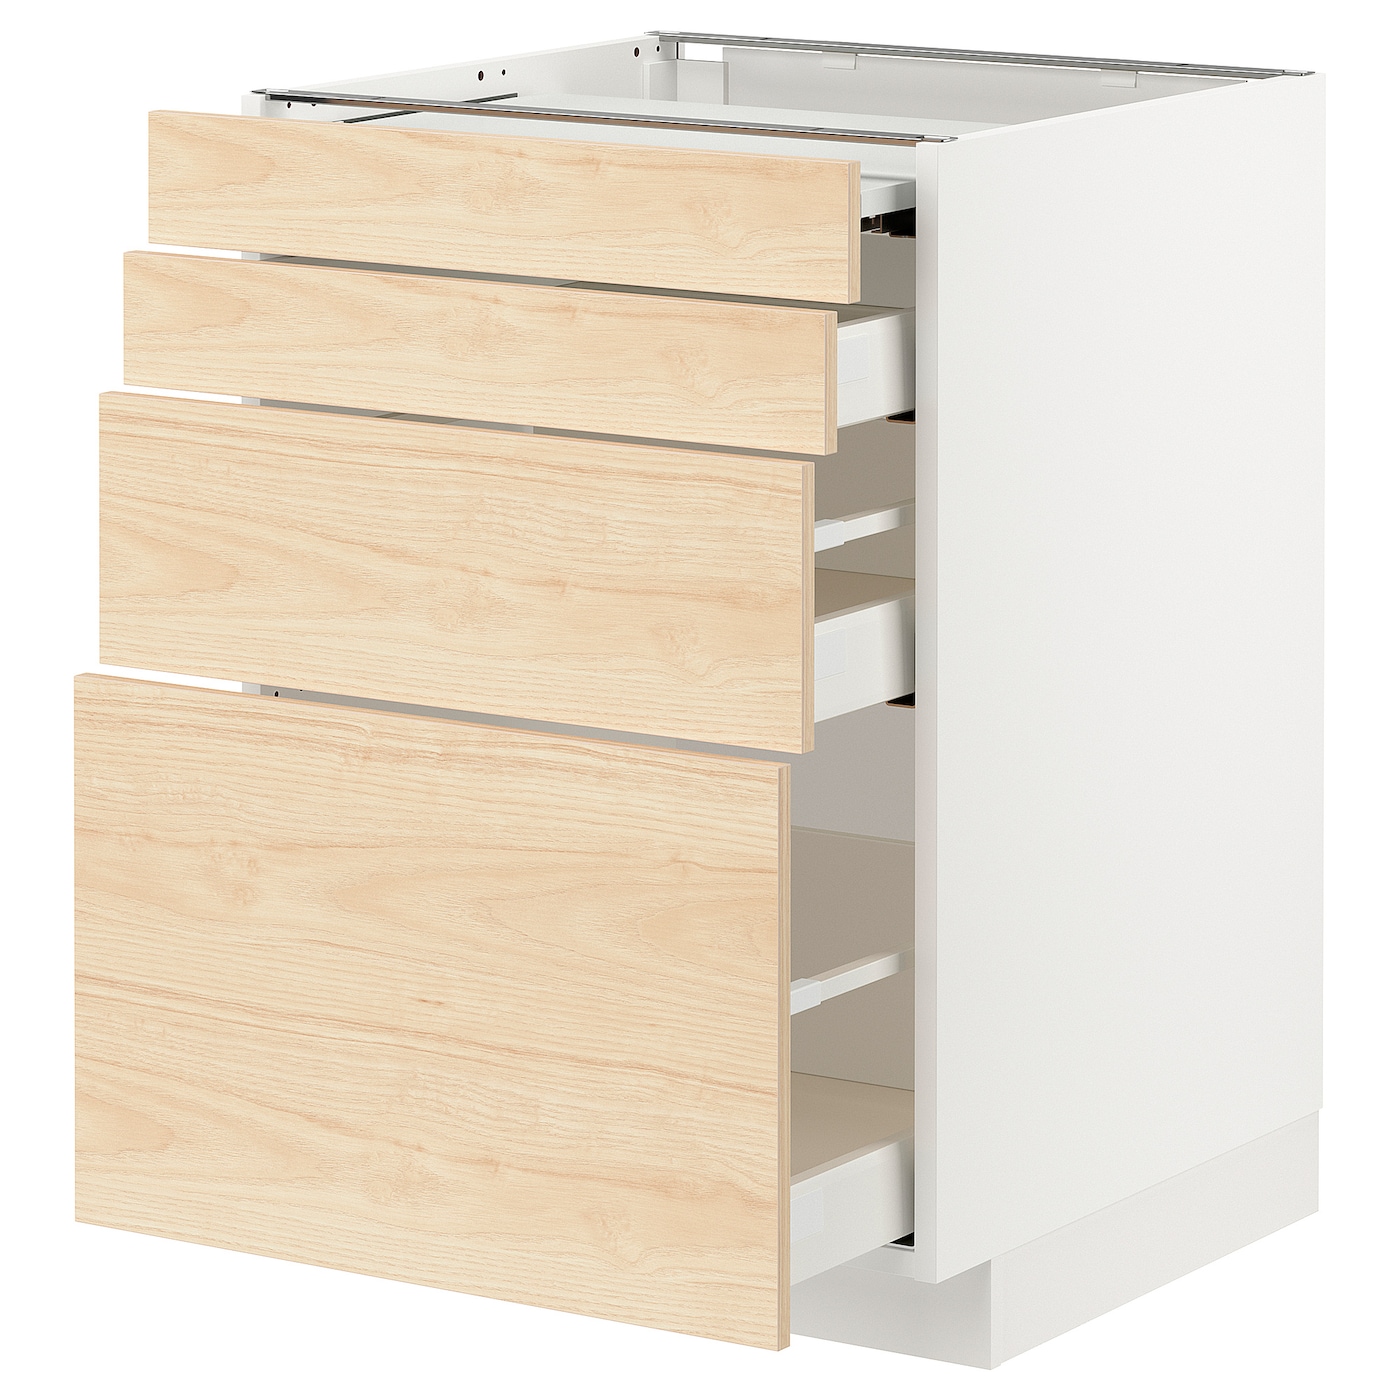 Напольный шкаф - METOD / MAXIMERA IKEA/ МЕТОД/ МАКСИМЕРА ИКЕА,  88х60 см, белый/под беленый дуб